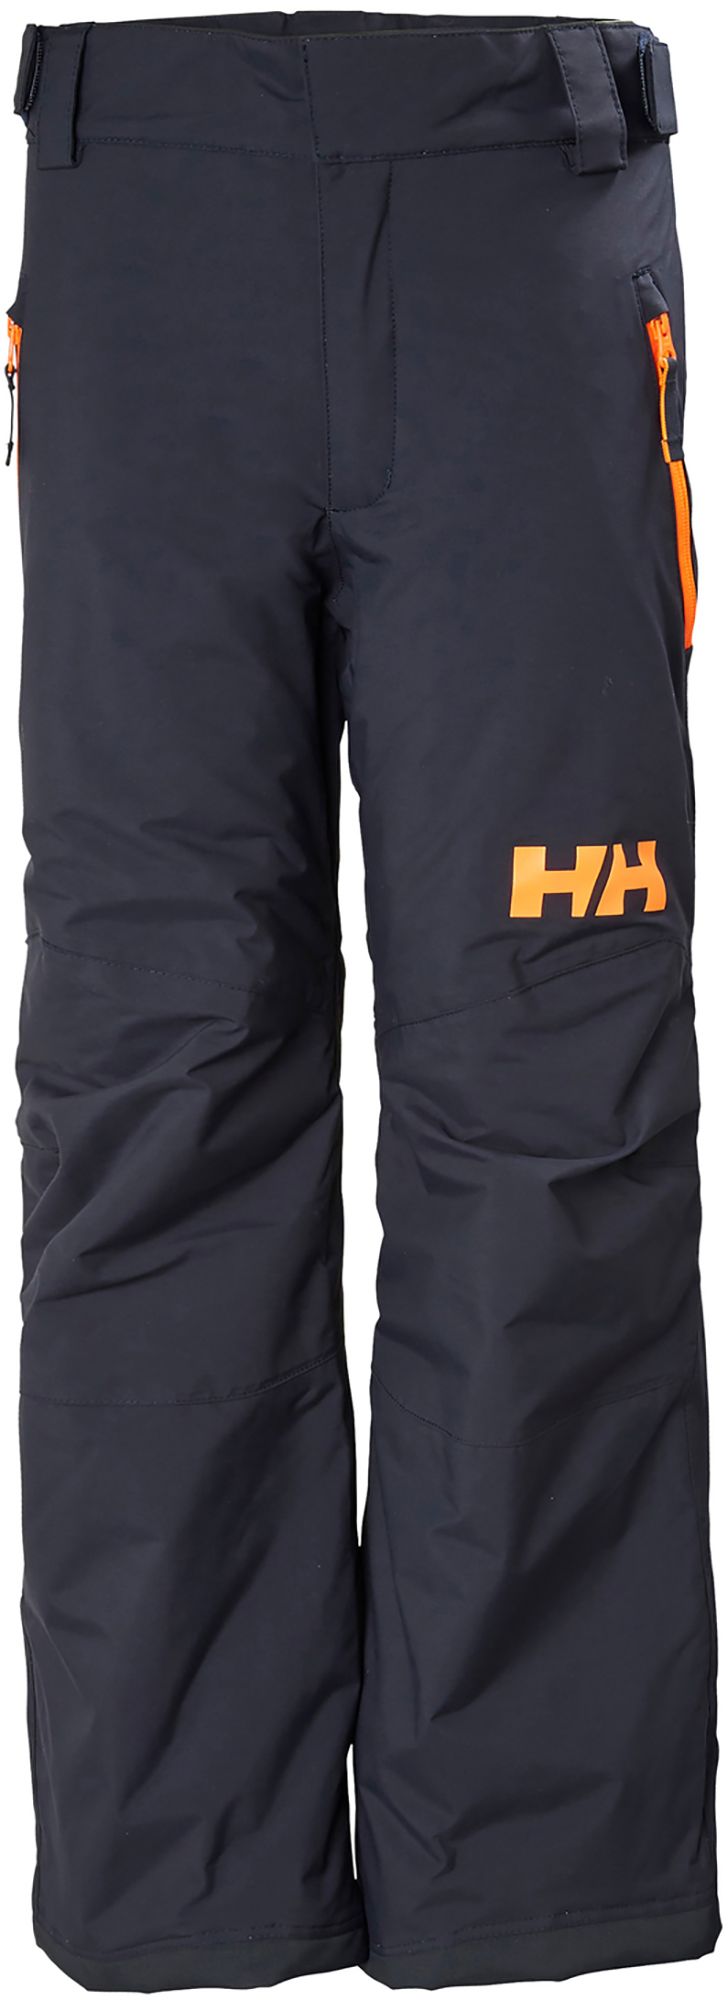 Photos - Ski Wear Helly Hansen Junior's Legendary Pants, Boys', Size 10, Navy 21HLYYYLGNDRYP 